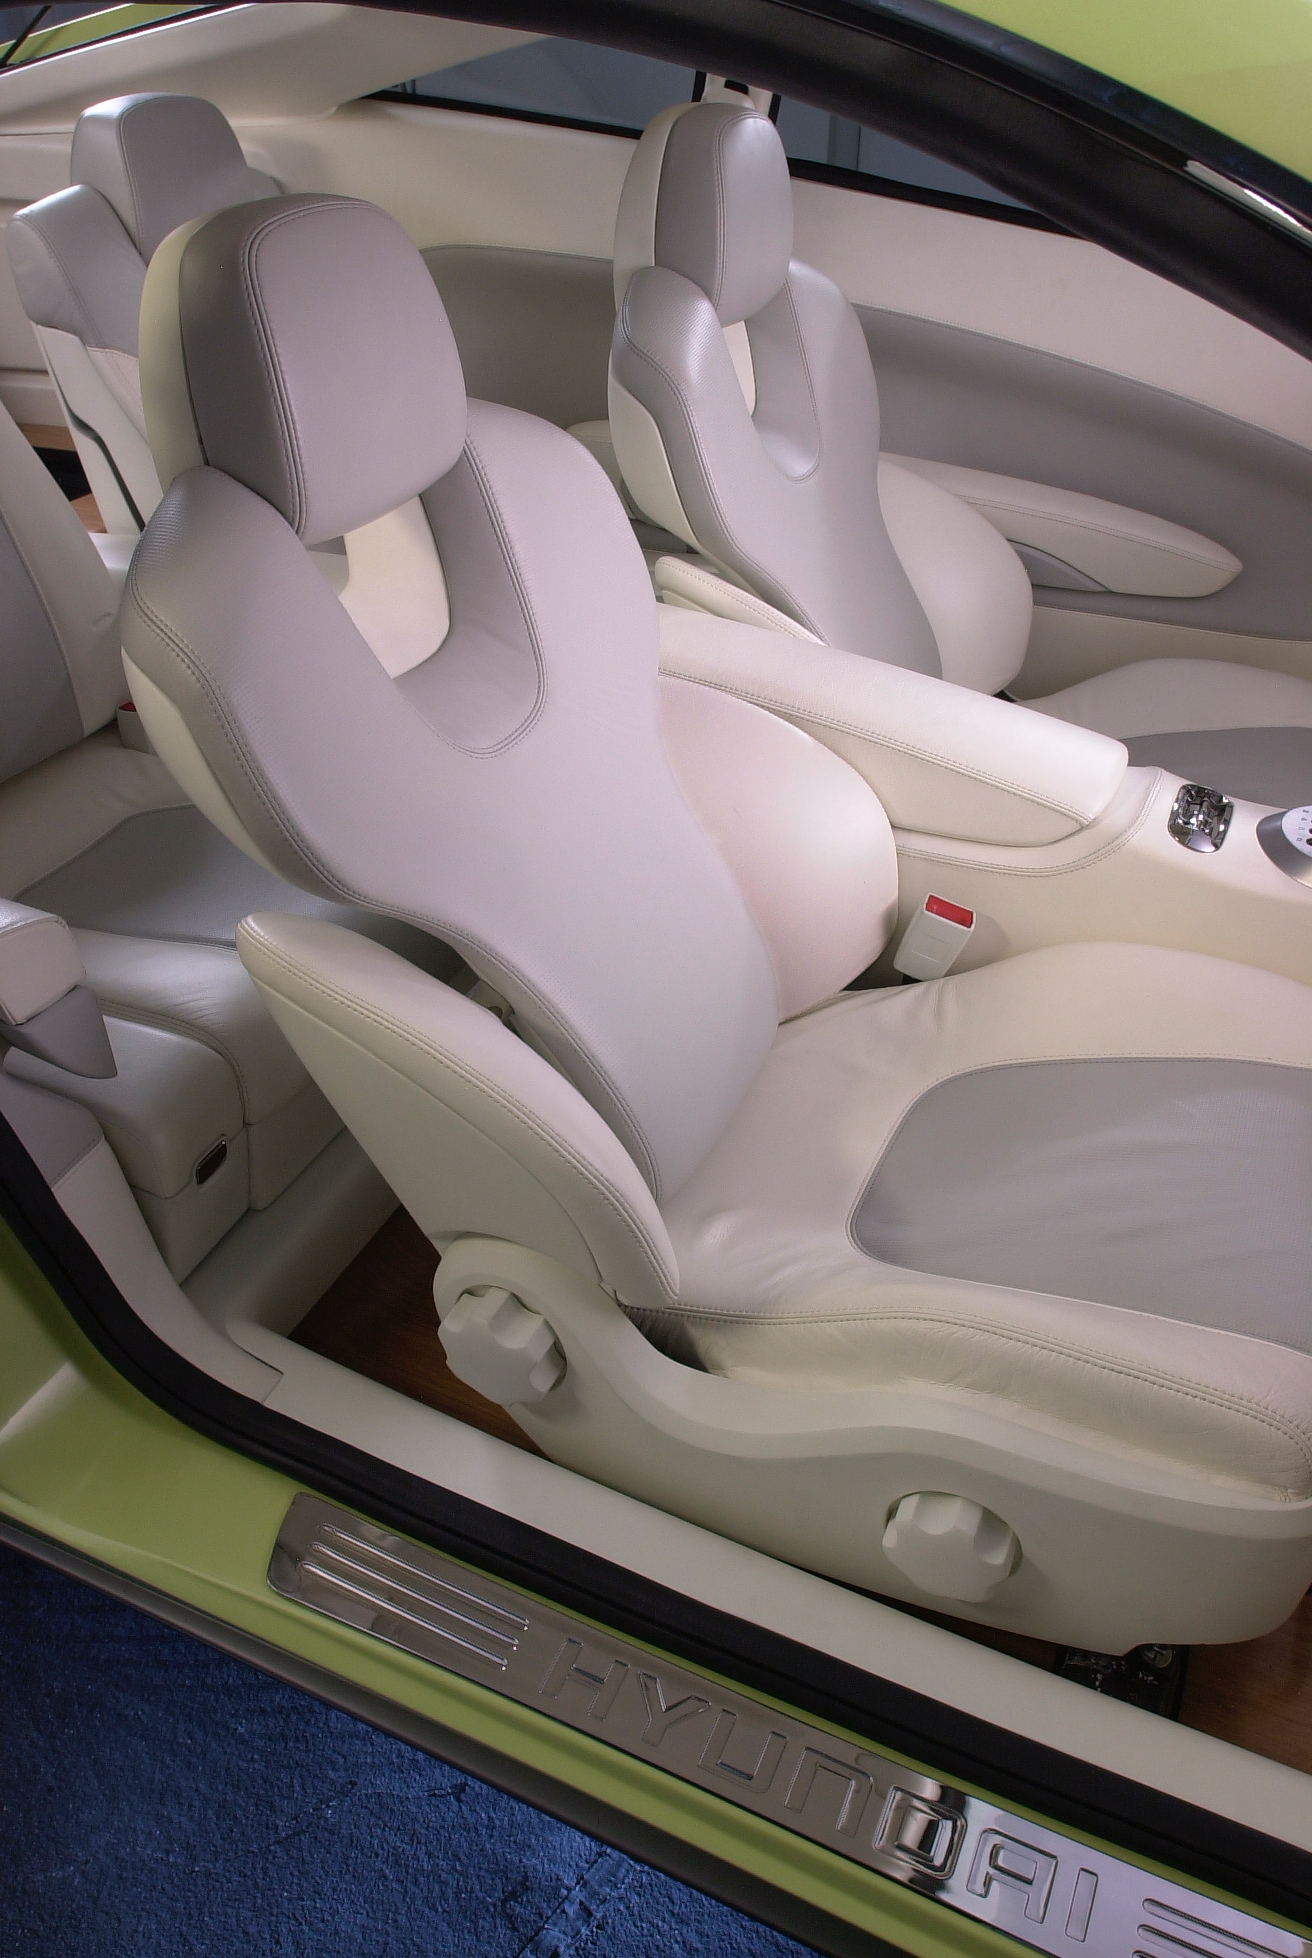 Hyundai HCD-8 Sports Tourer Concept, 2004 - Interior